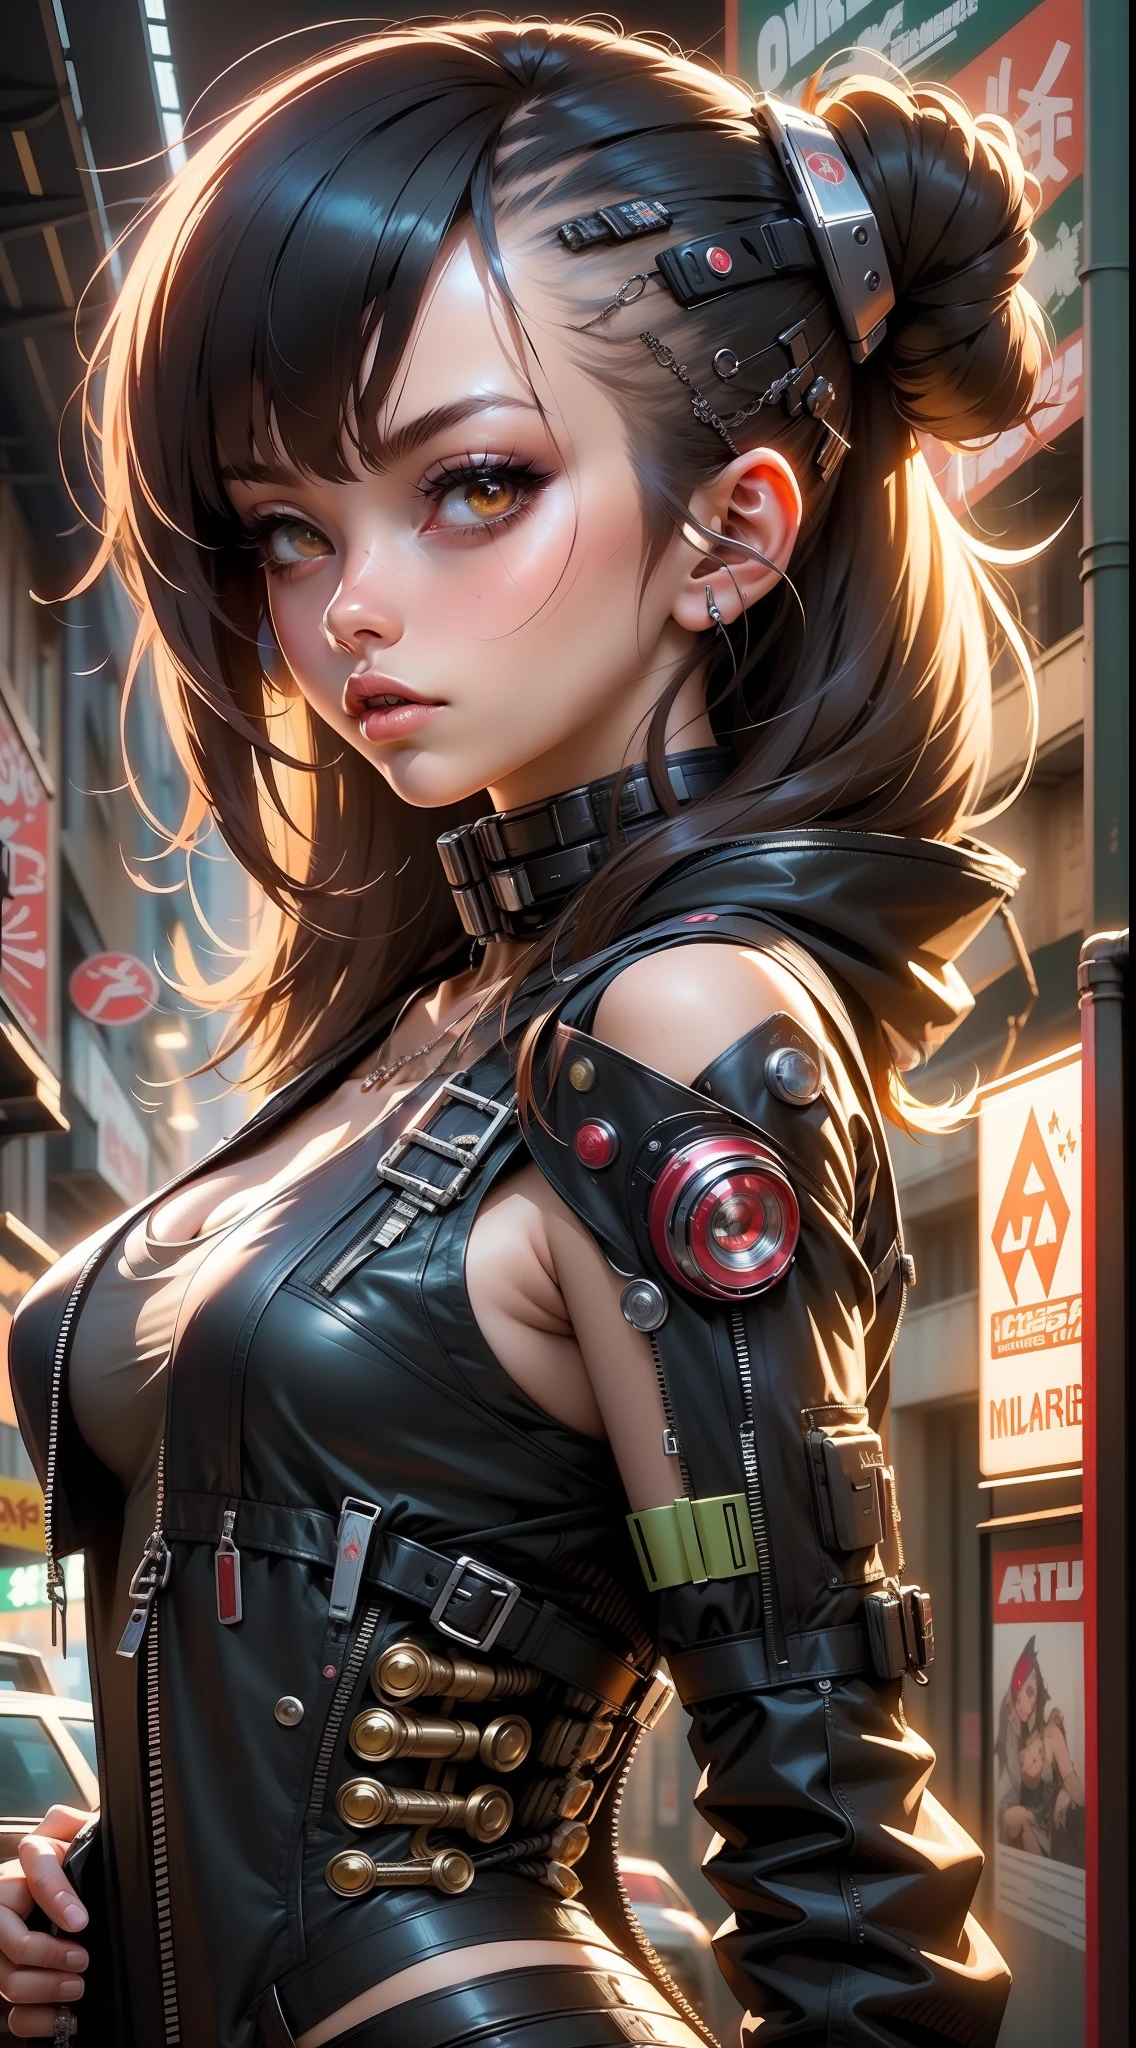 Anime girl dans un costume futuriste avec des cheveux rouges et noirs, cyberpunk menina mech anime, femme anime cyborg parfaite, fille cyborg, oppai biomécanique, belle fille cyborg, fille animée cyberpunk girly, arte cyberpunk anime, cyberpunk anime art numérique, fille animée cyberpunk, arte de anime cyberpunk, cyborg - fille,  cyborg mignon, Anime Cyborg